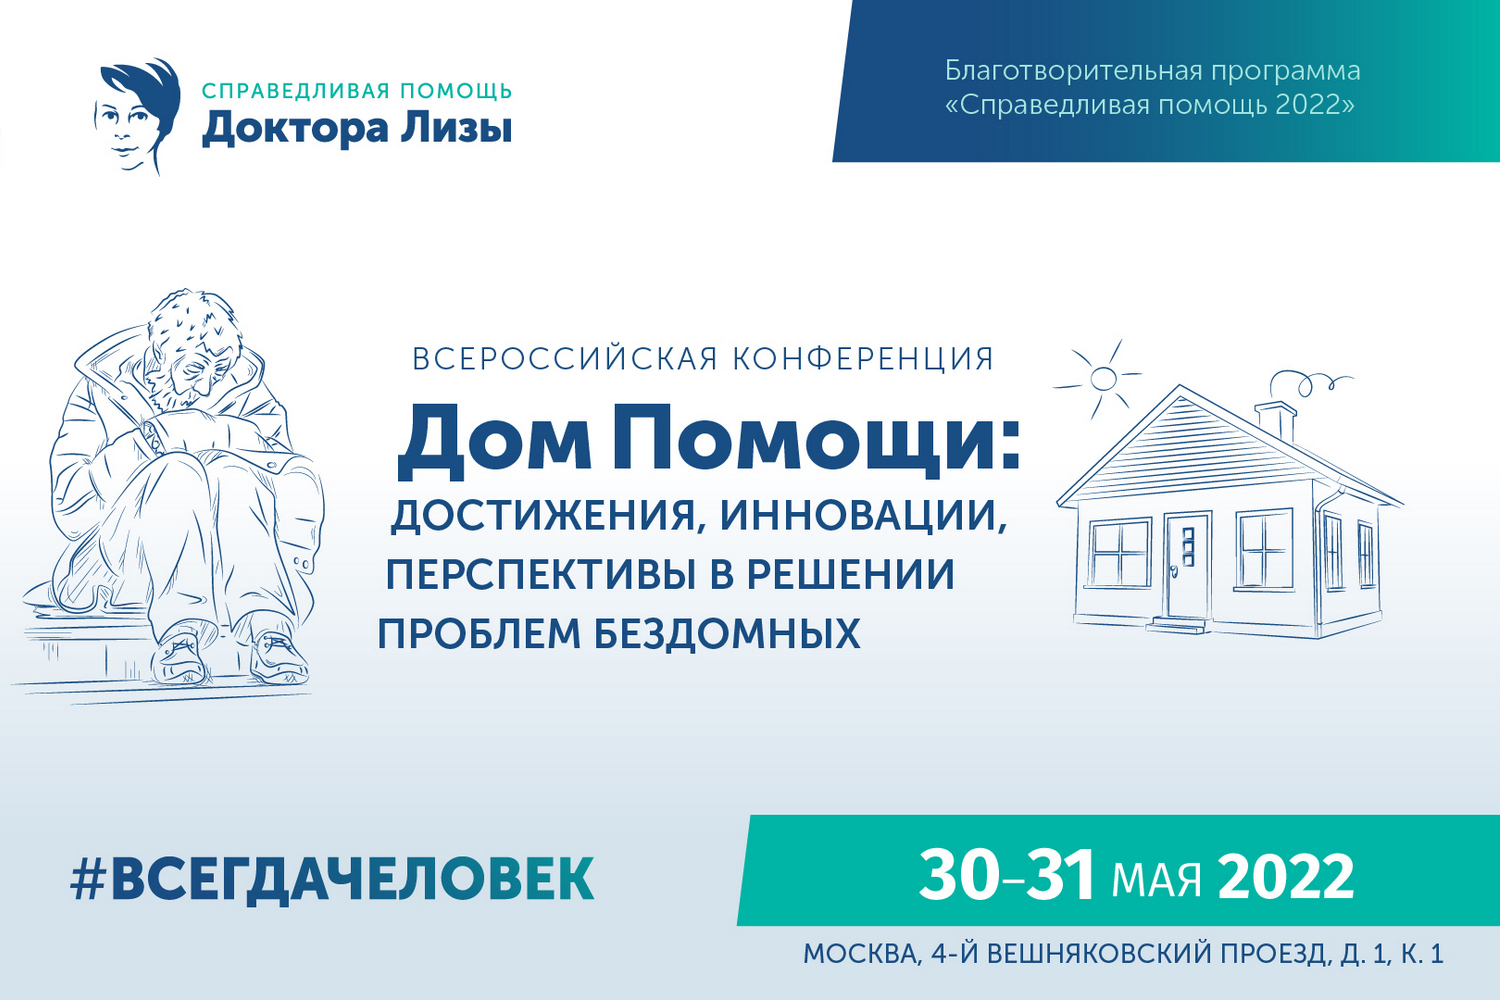 Открыта регистрация на Всероссийскую конференцию “Дом помощи: Достижения, инновации, перспективы в решении проблем бездомных”